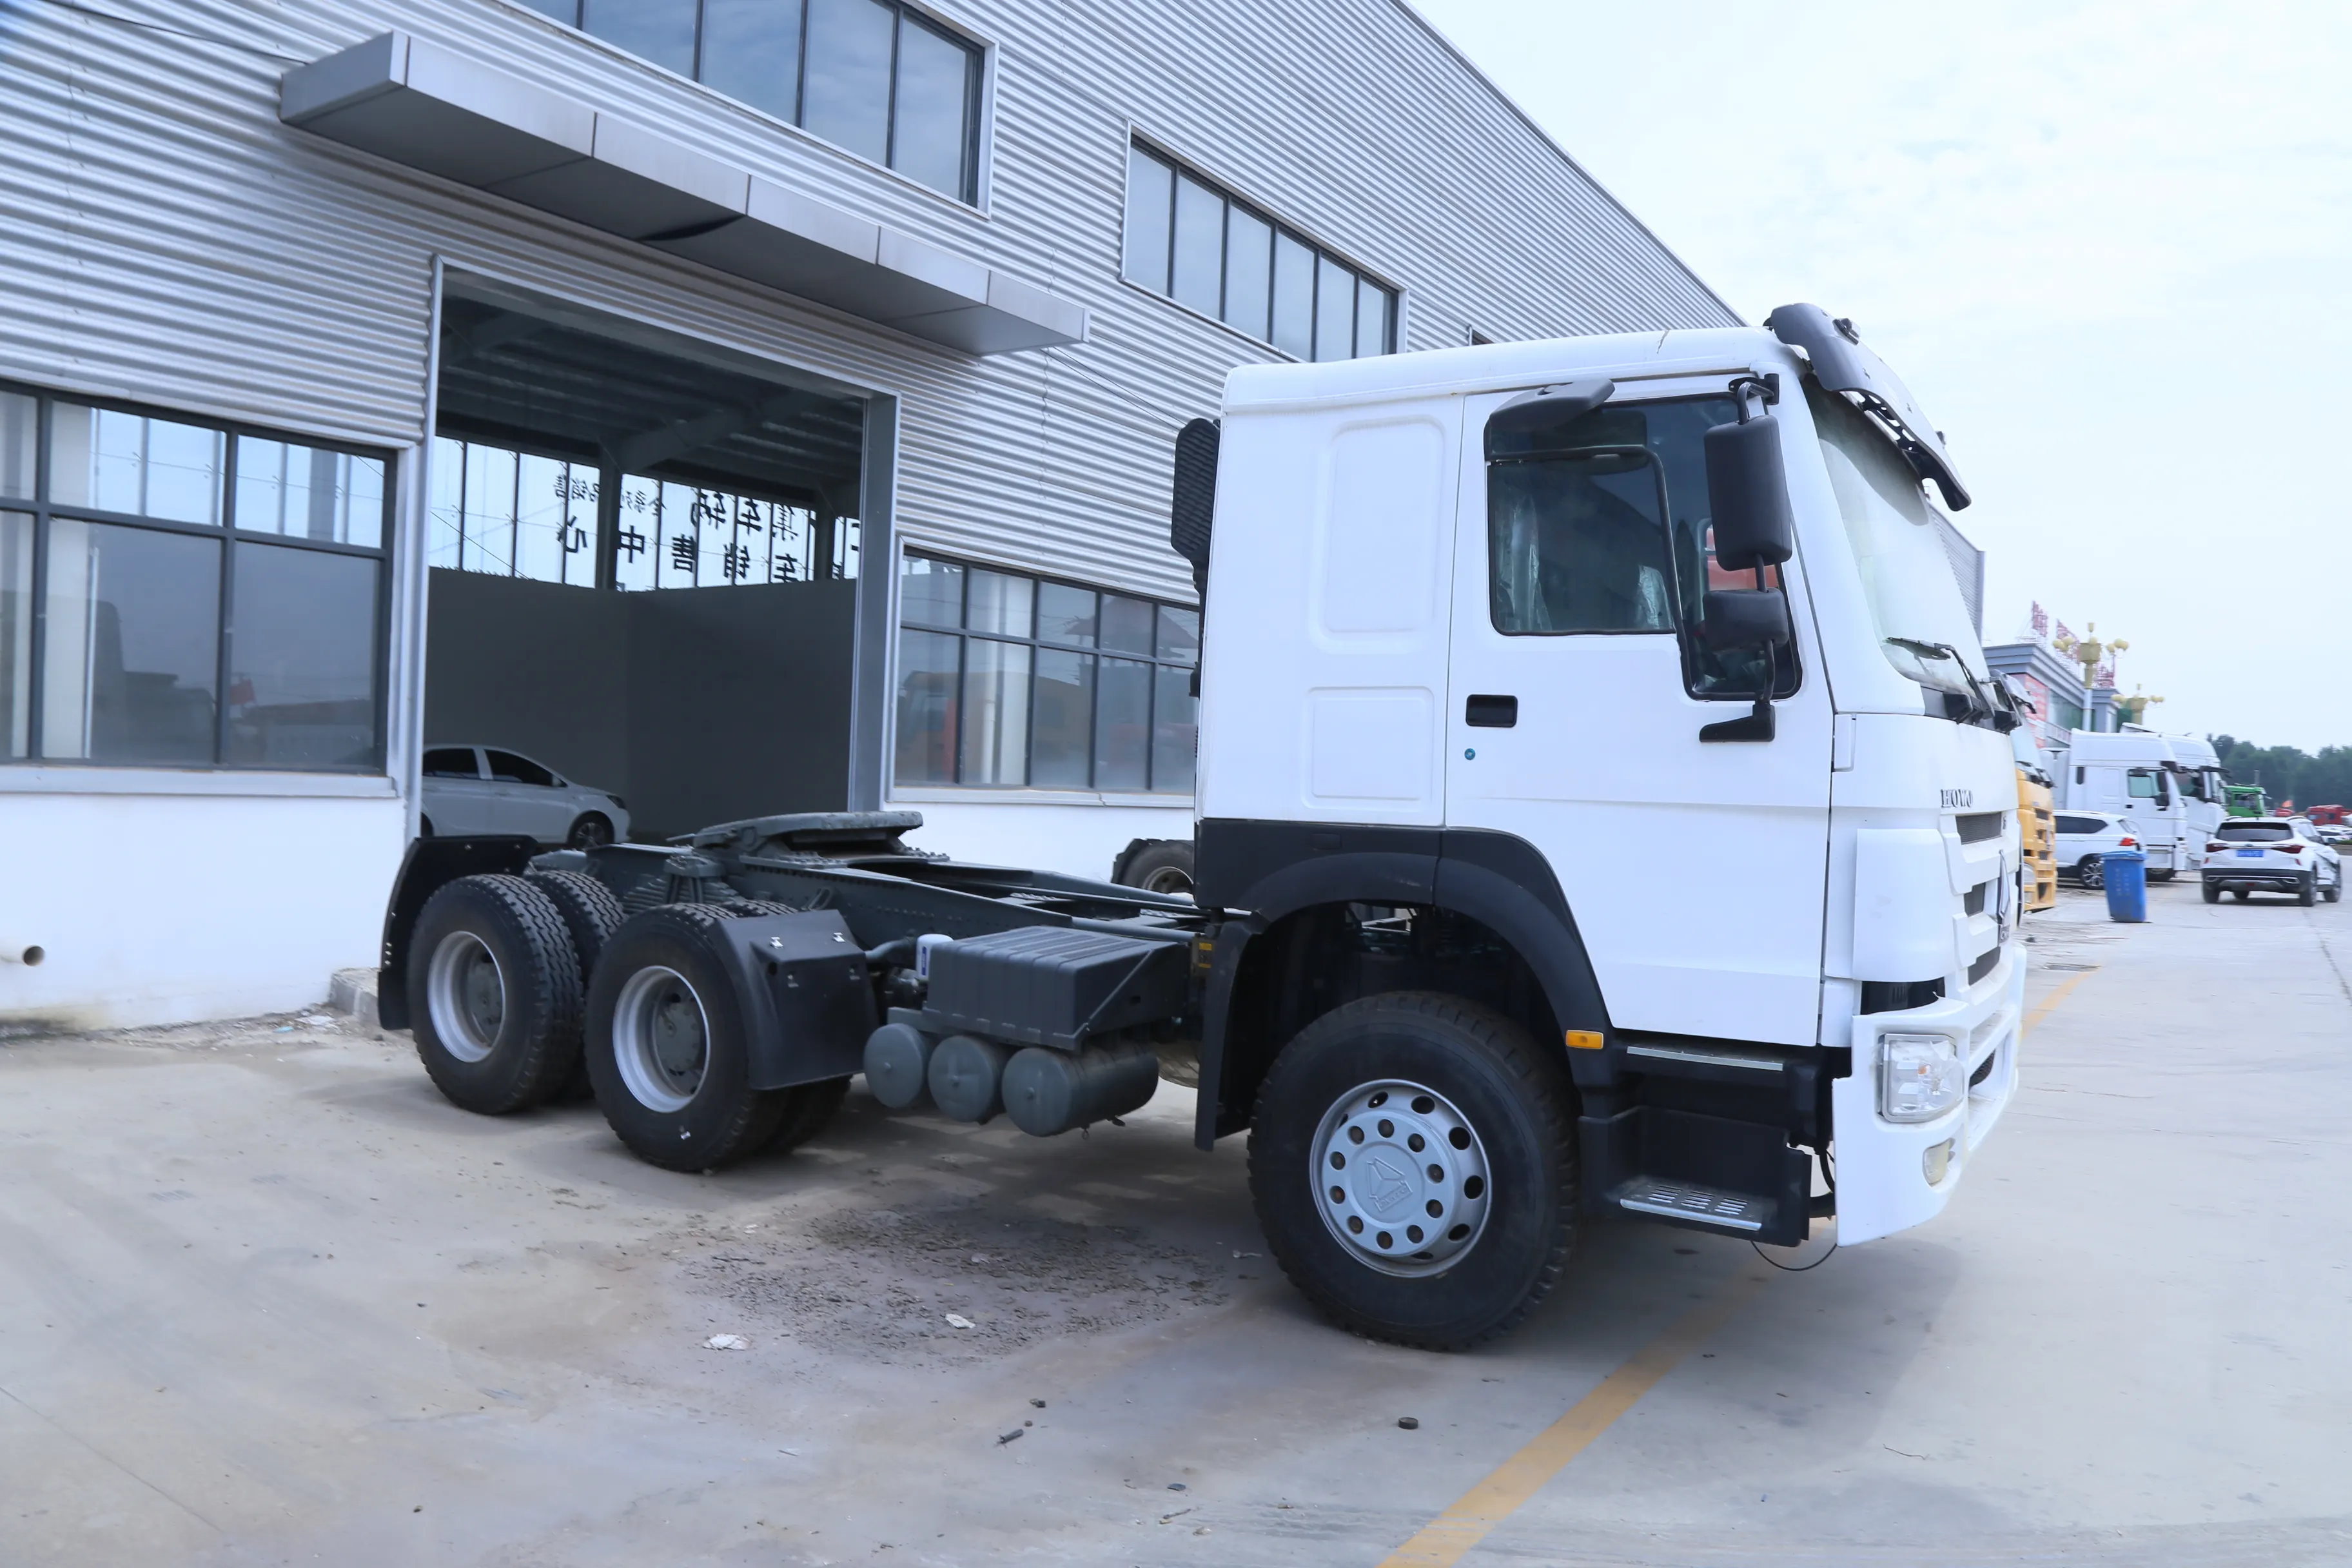 Trattore usato howo 6x4 trattore 10 ruote cng lng trattore camion in lega di metallo costruzione auto bestiame camion